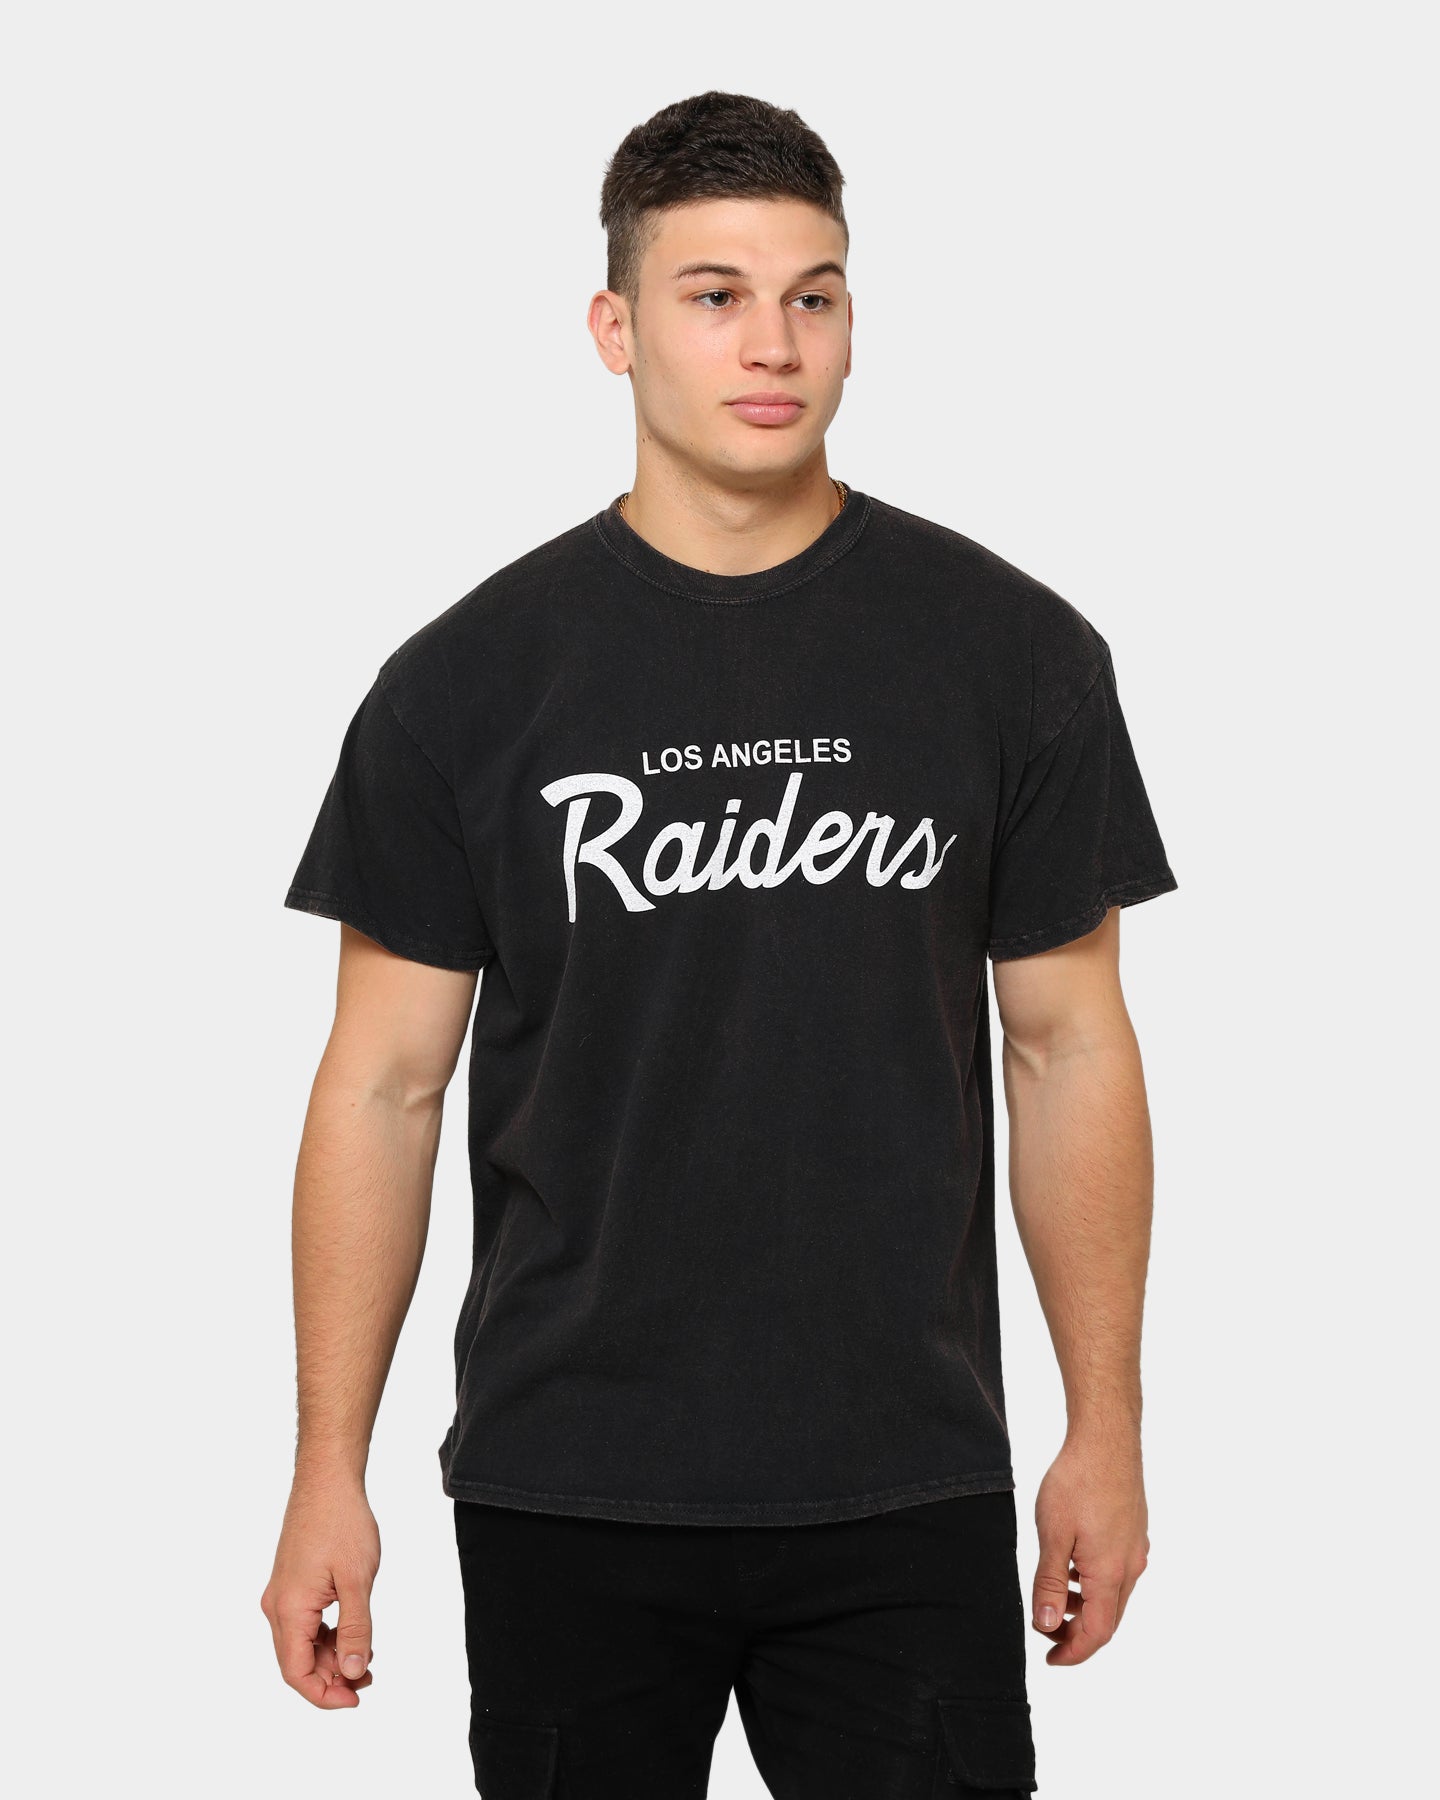 raiders tee shirt